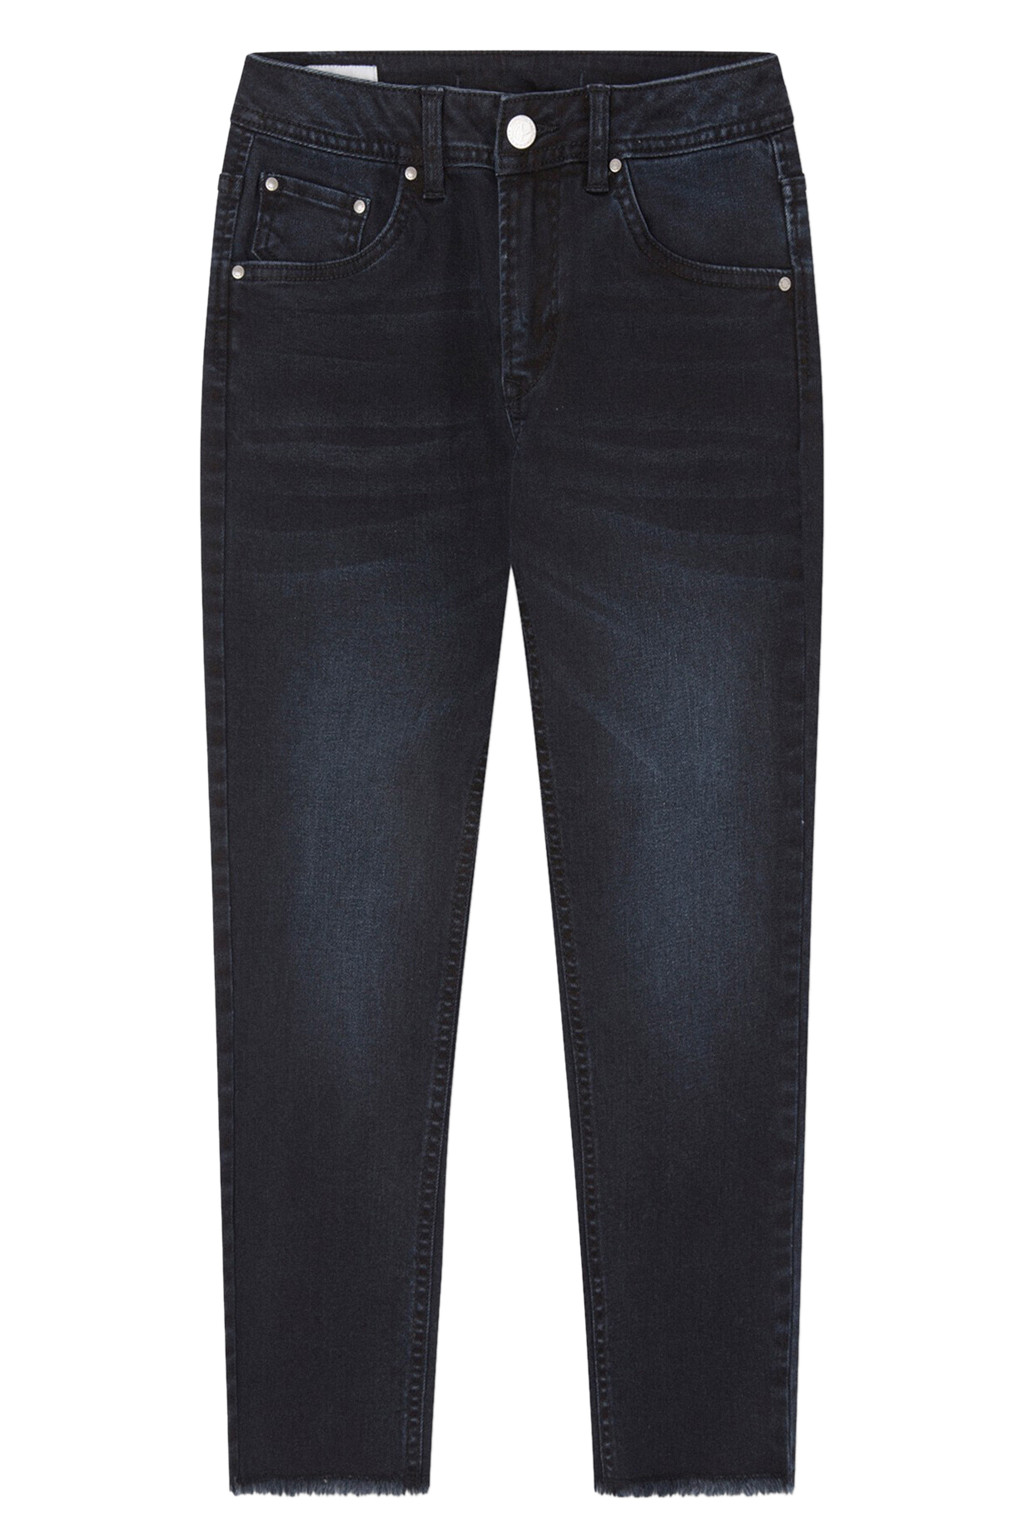 granatowe spodnie jeansowe rurki